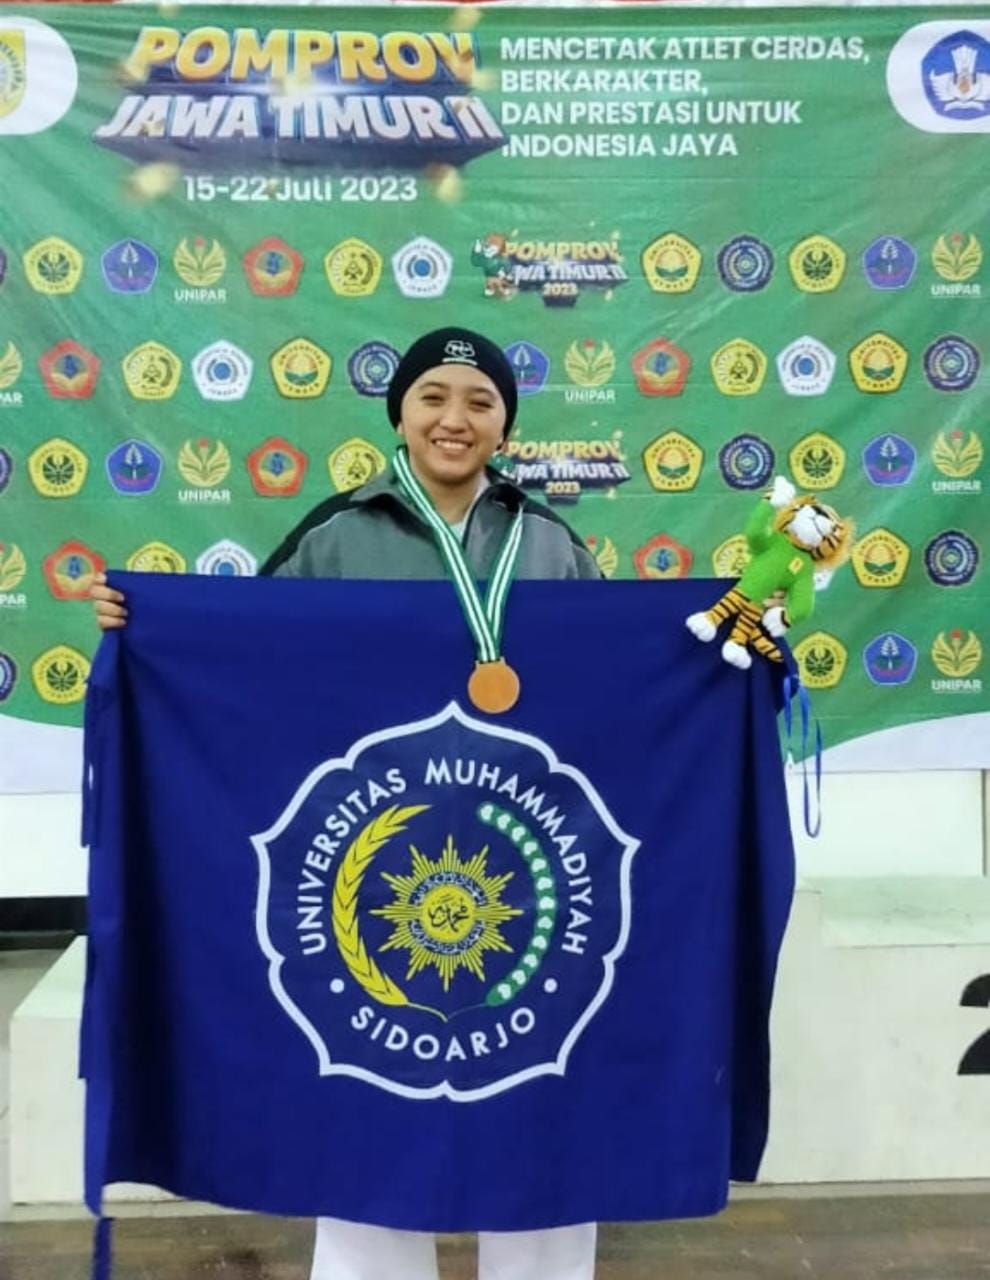 Mahasiswa Umsida Dengan Segudang Prestasi Ini Kembali Raih Juara Dalam Pomprov Jatim 2023